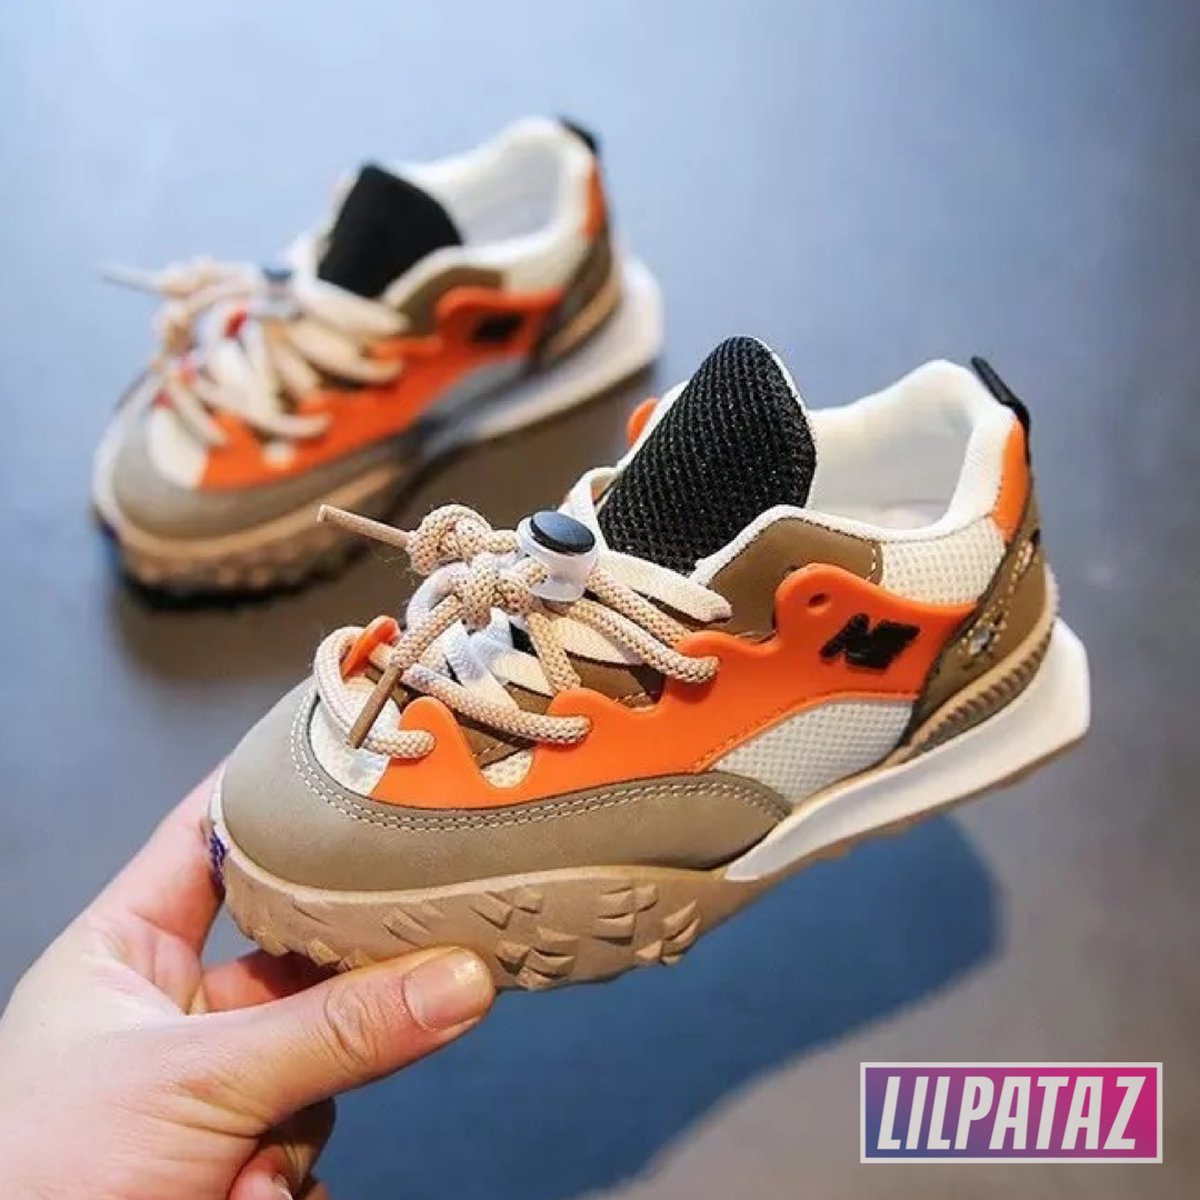 LilPataz Moon Spikes - Lage sneakers - jongens kids kinderen - Oranje Bruin Groen - Maat 29